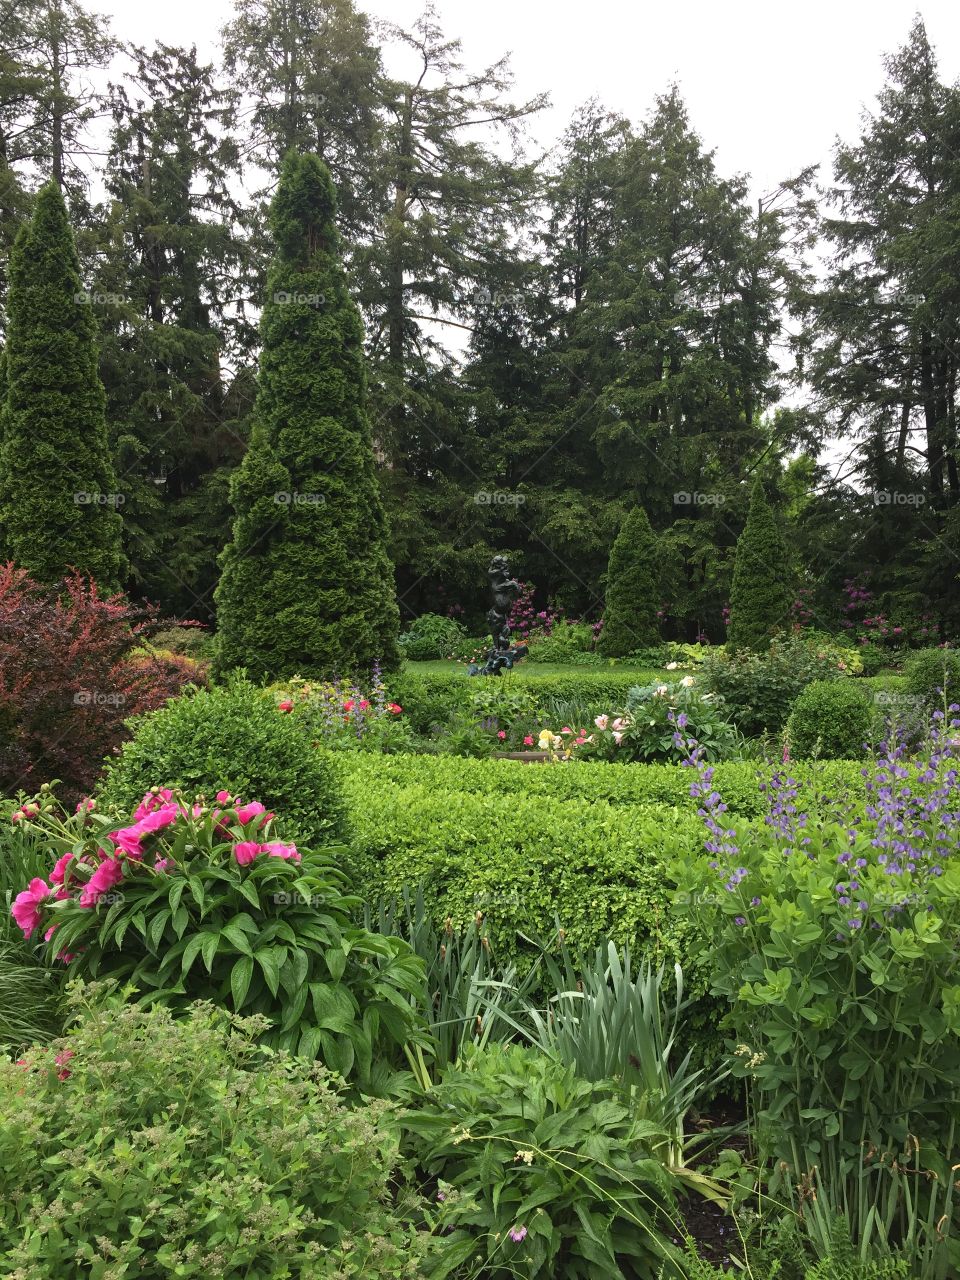 stunning lush gardens of Princeton University in Princeton, New Jersey // May 2017